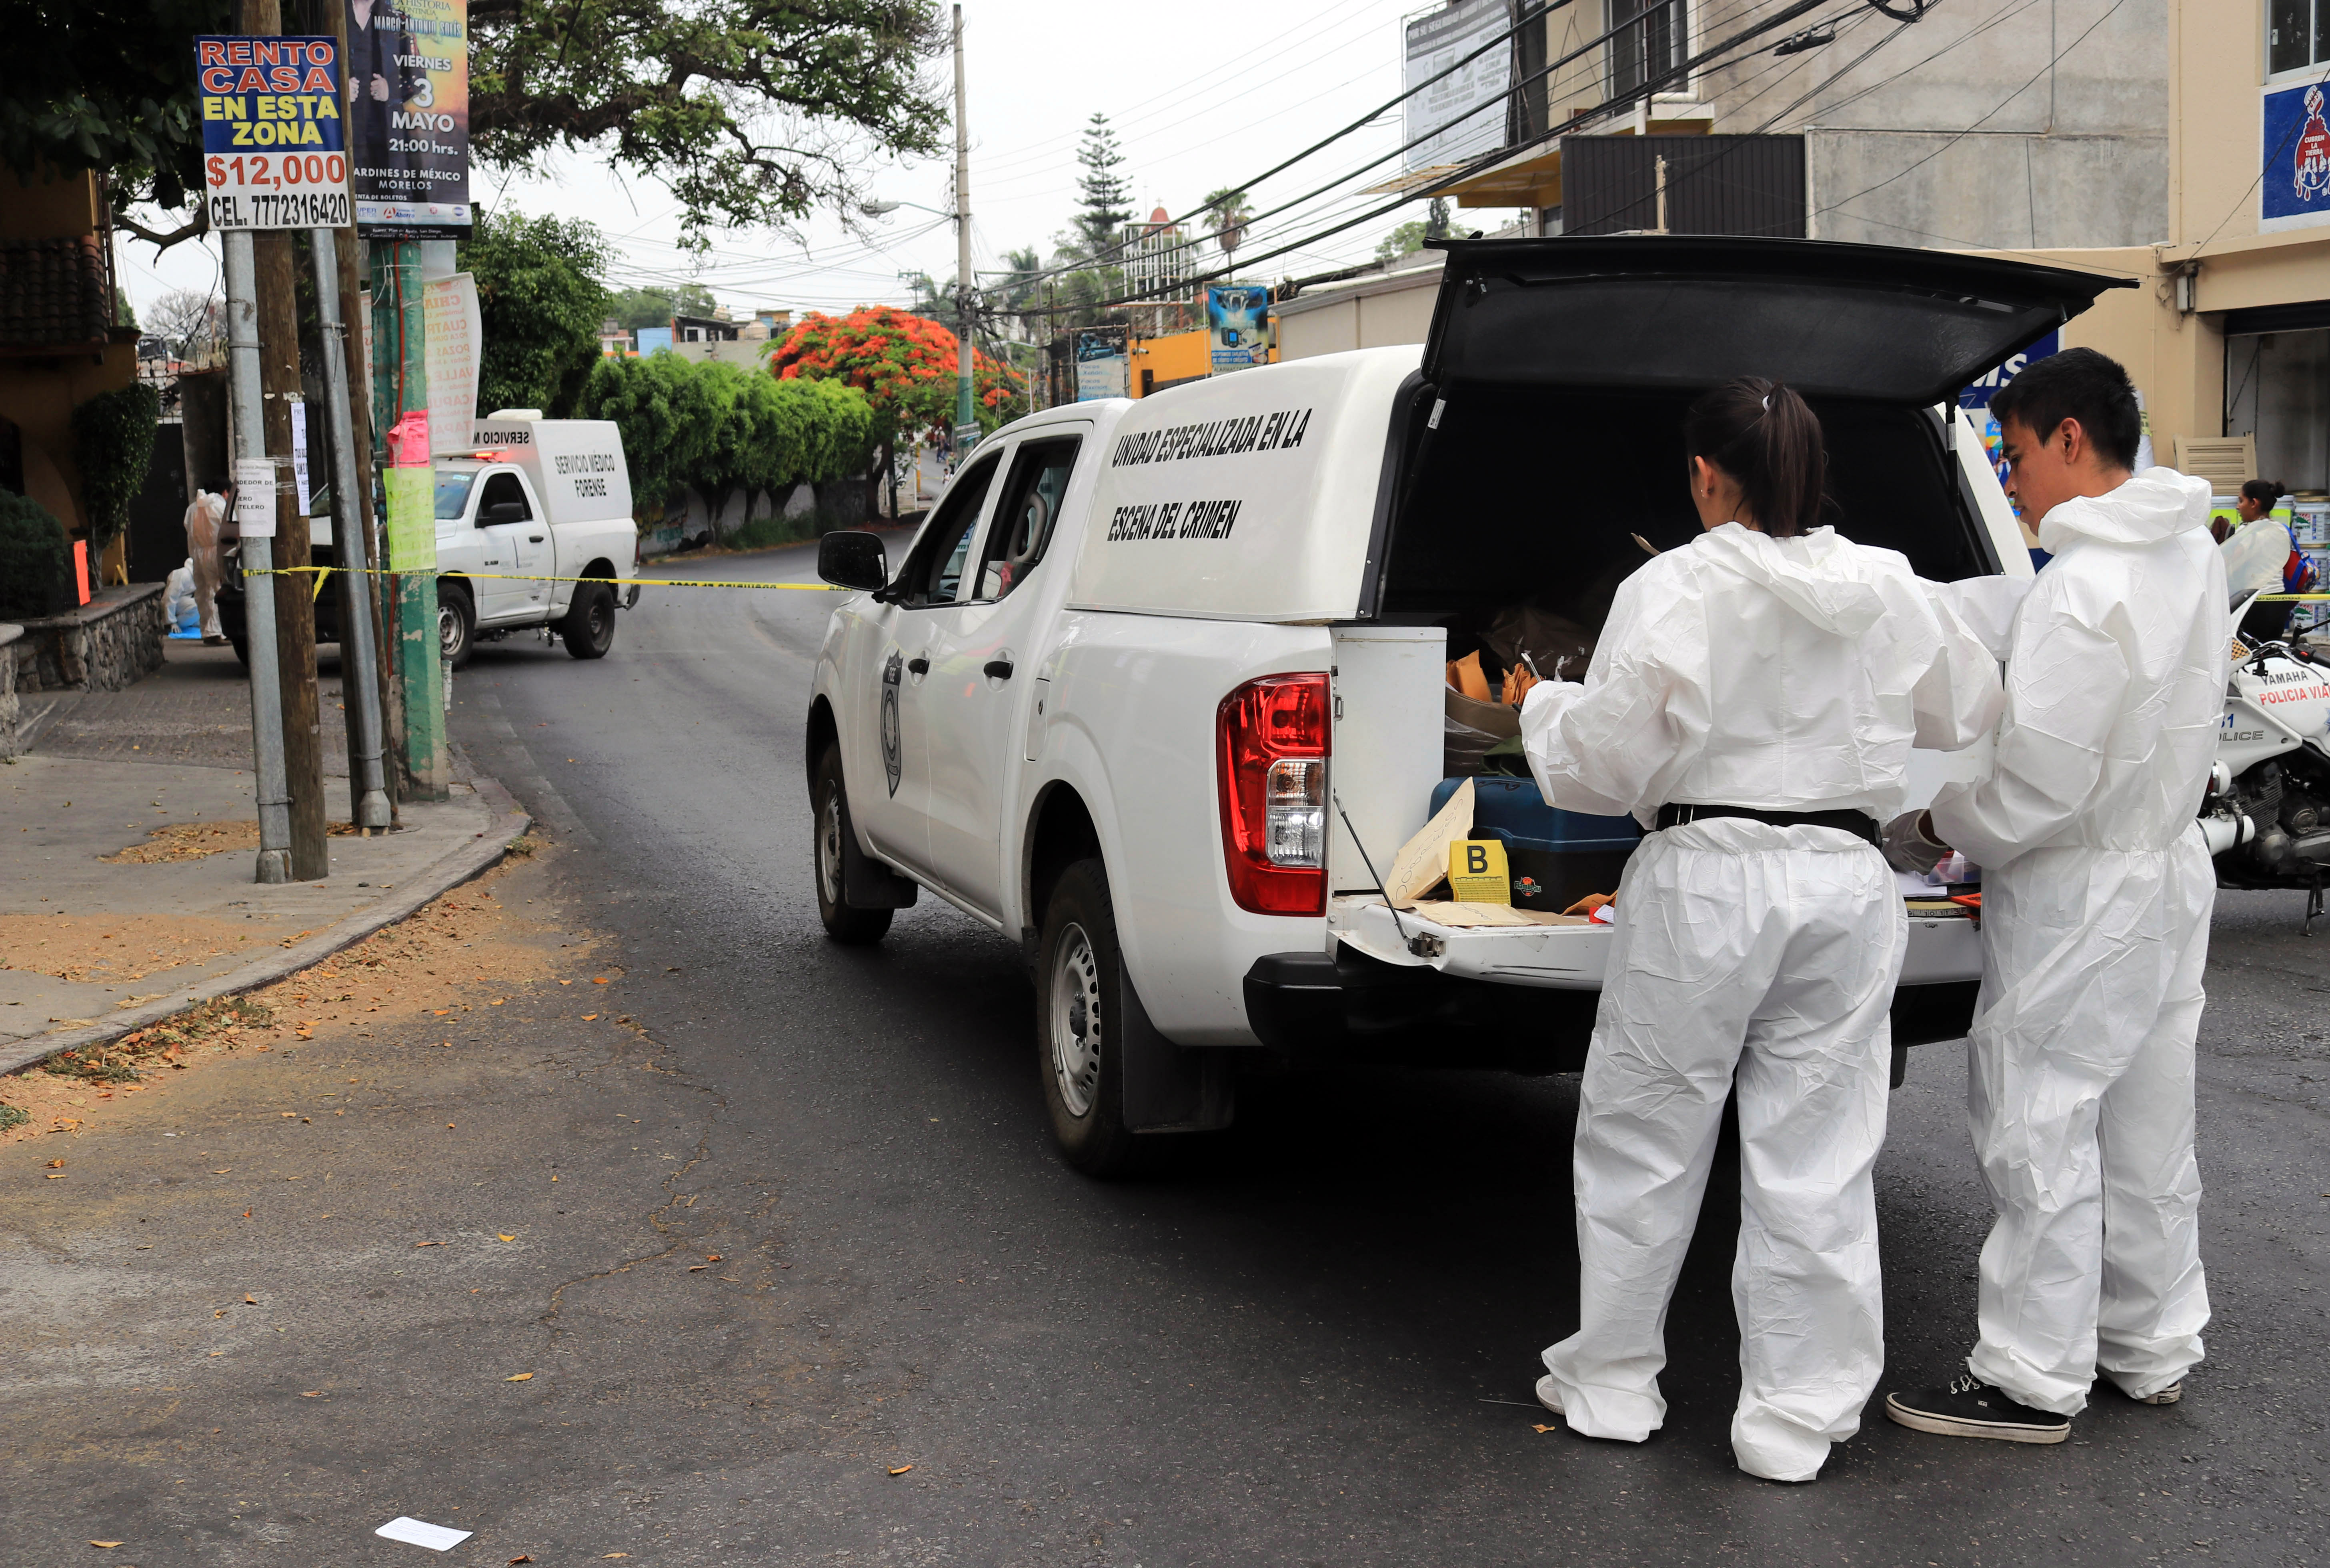 Según los informes policiales, los restos humanos fueron localizados la mañana de este jueves a las 6:45 horas en bolsas de plástico negras y transparentes (FOTO: MARGARITO PÉREZ RETANA /CUARTOSCURO.COM)